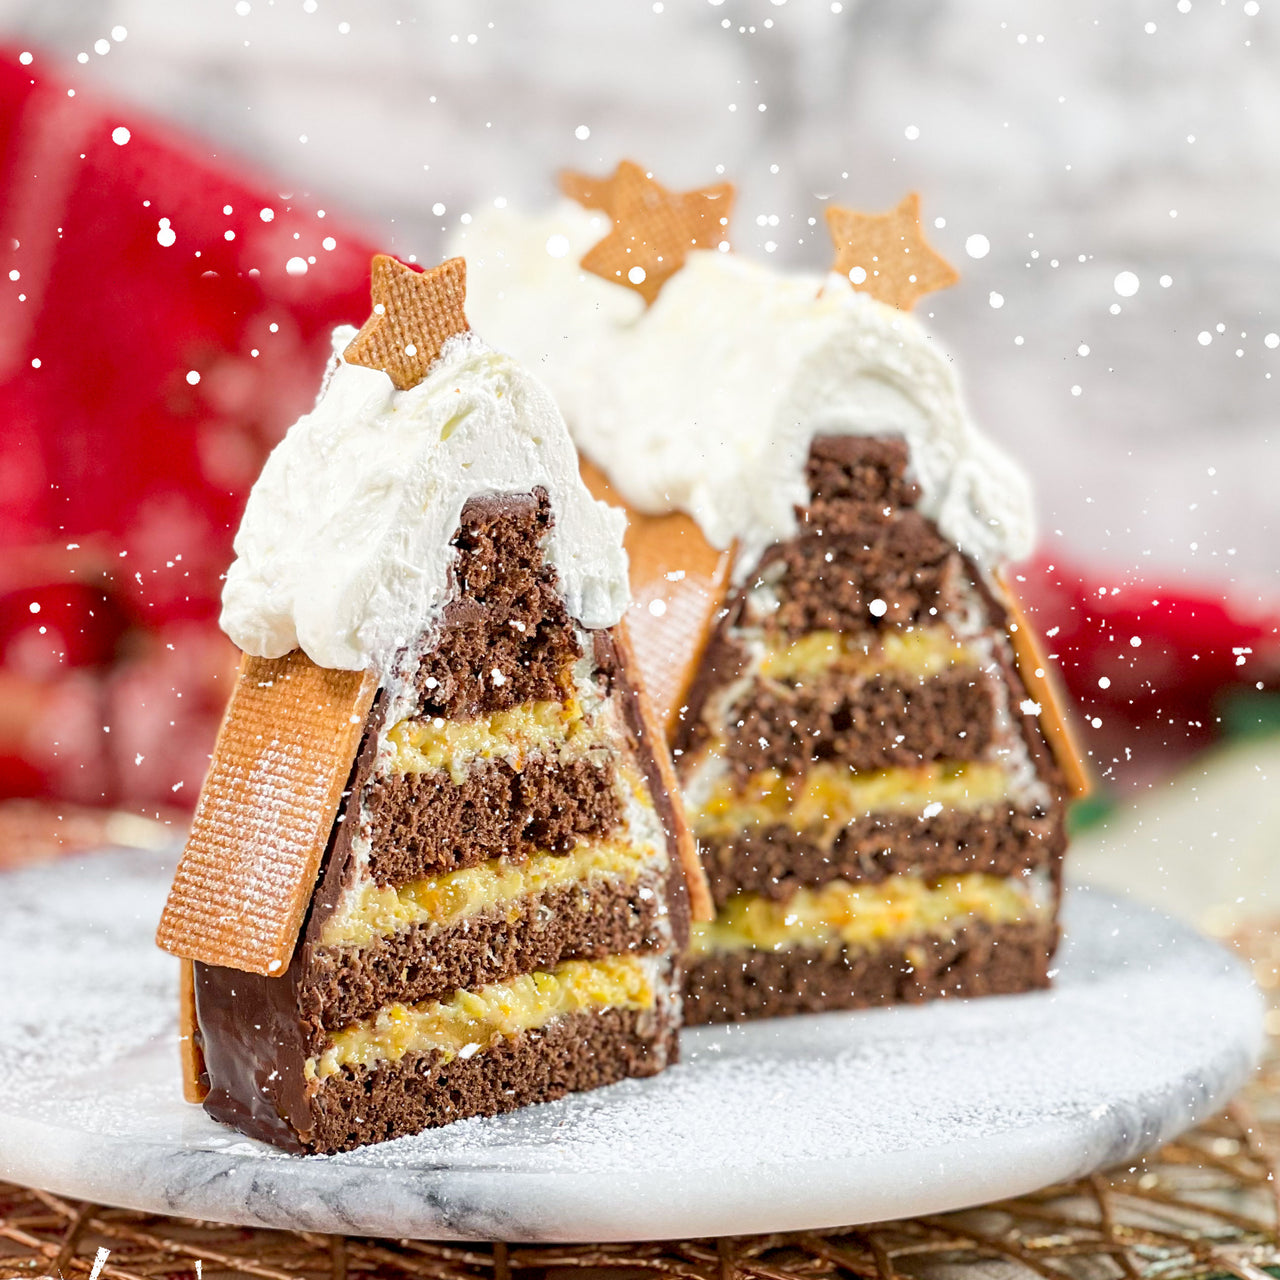 榛子朱古力香橙聖誕屋 | Hazelnut Dark Chocolate & Orange Santa House Cake